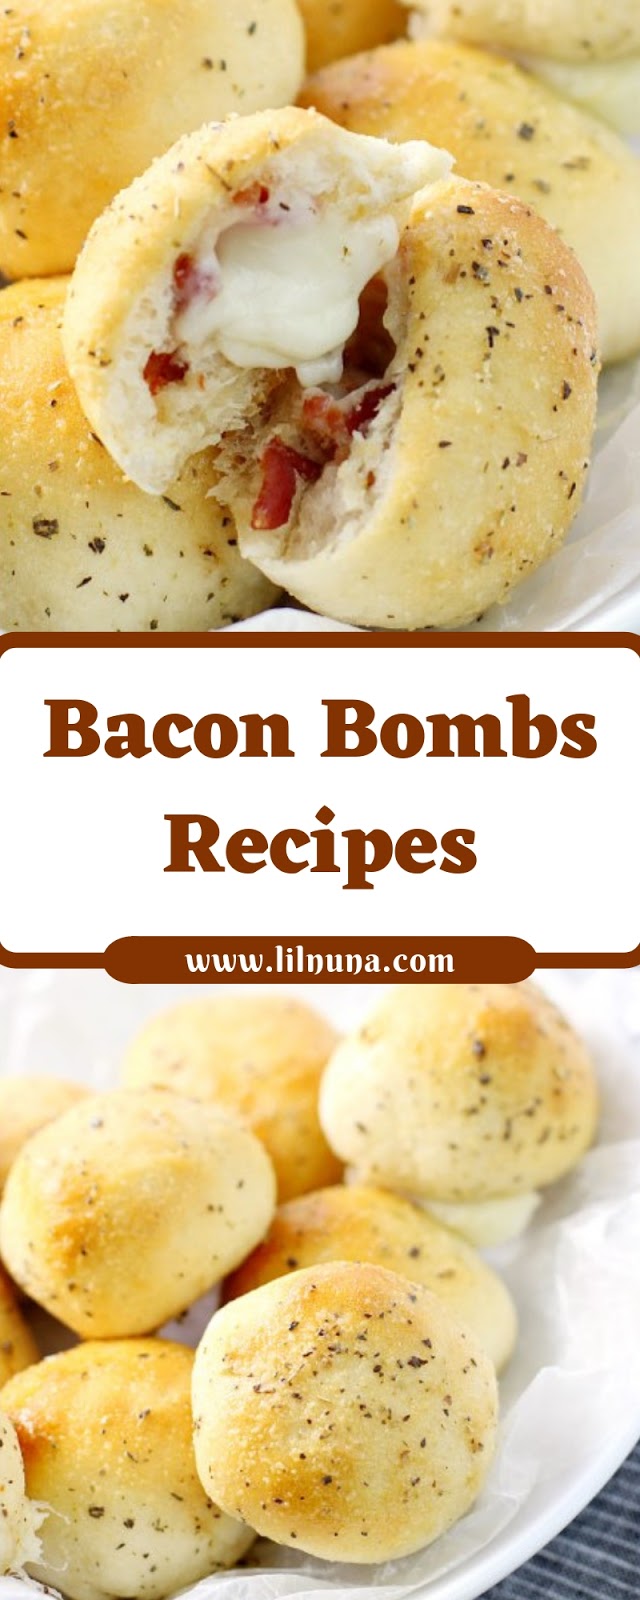 Bacon Bombs Recipes